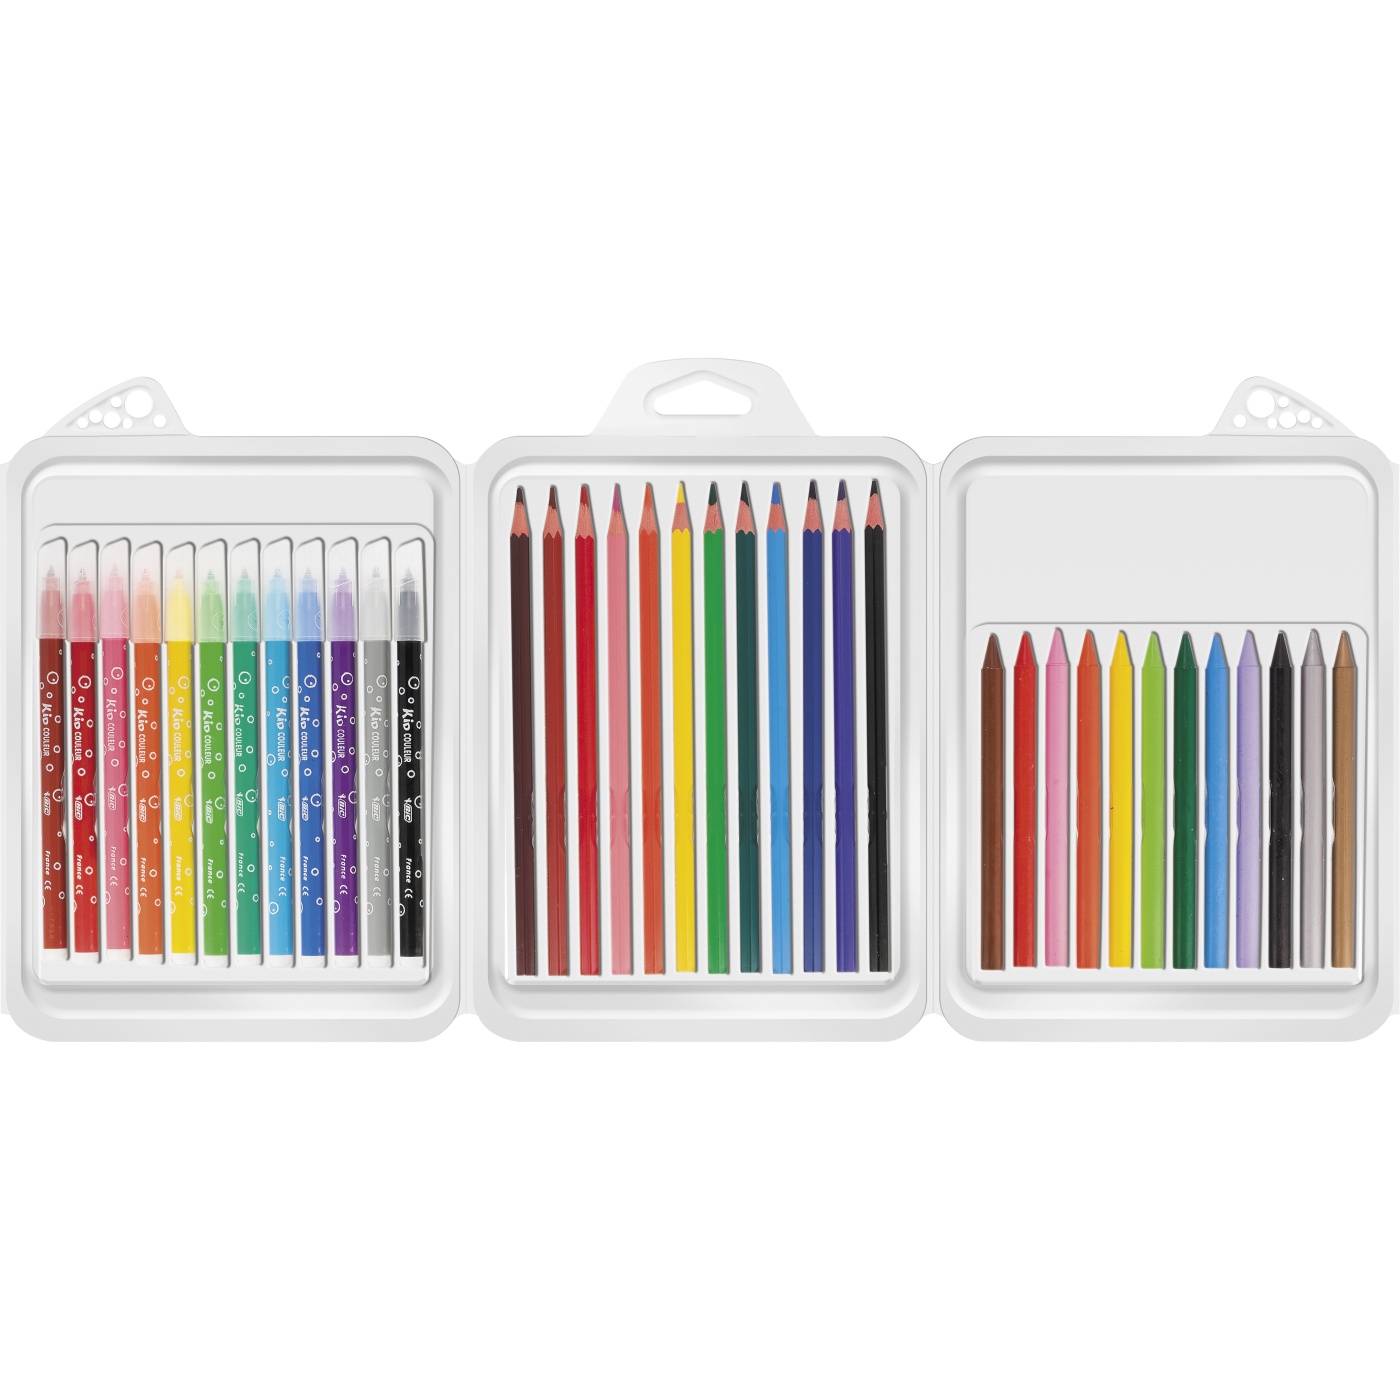 Kids Coloring kit 1 - 36 osia ryhmässä Kids / Lastenkynät / Lasten liidut @ Pen Store (100260)